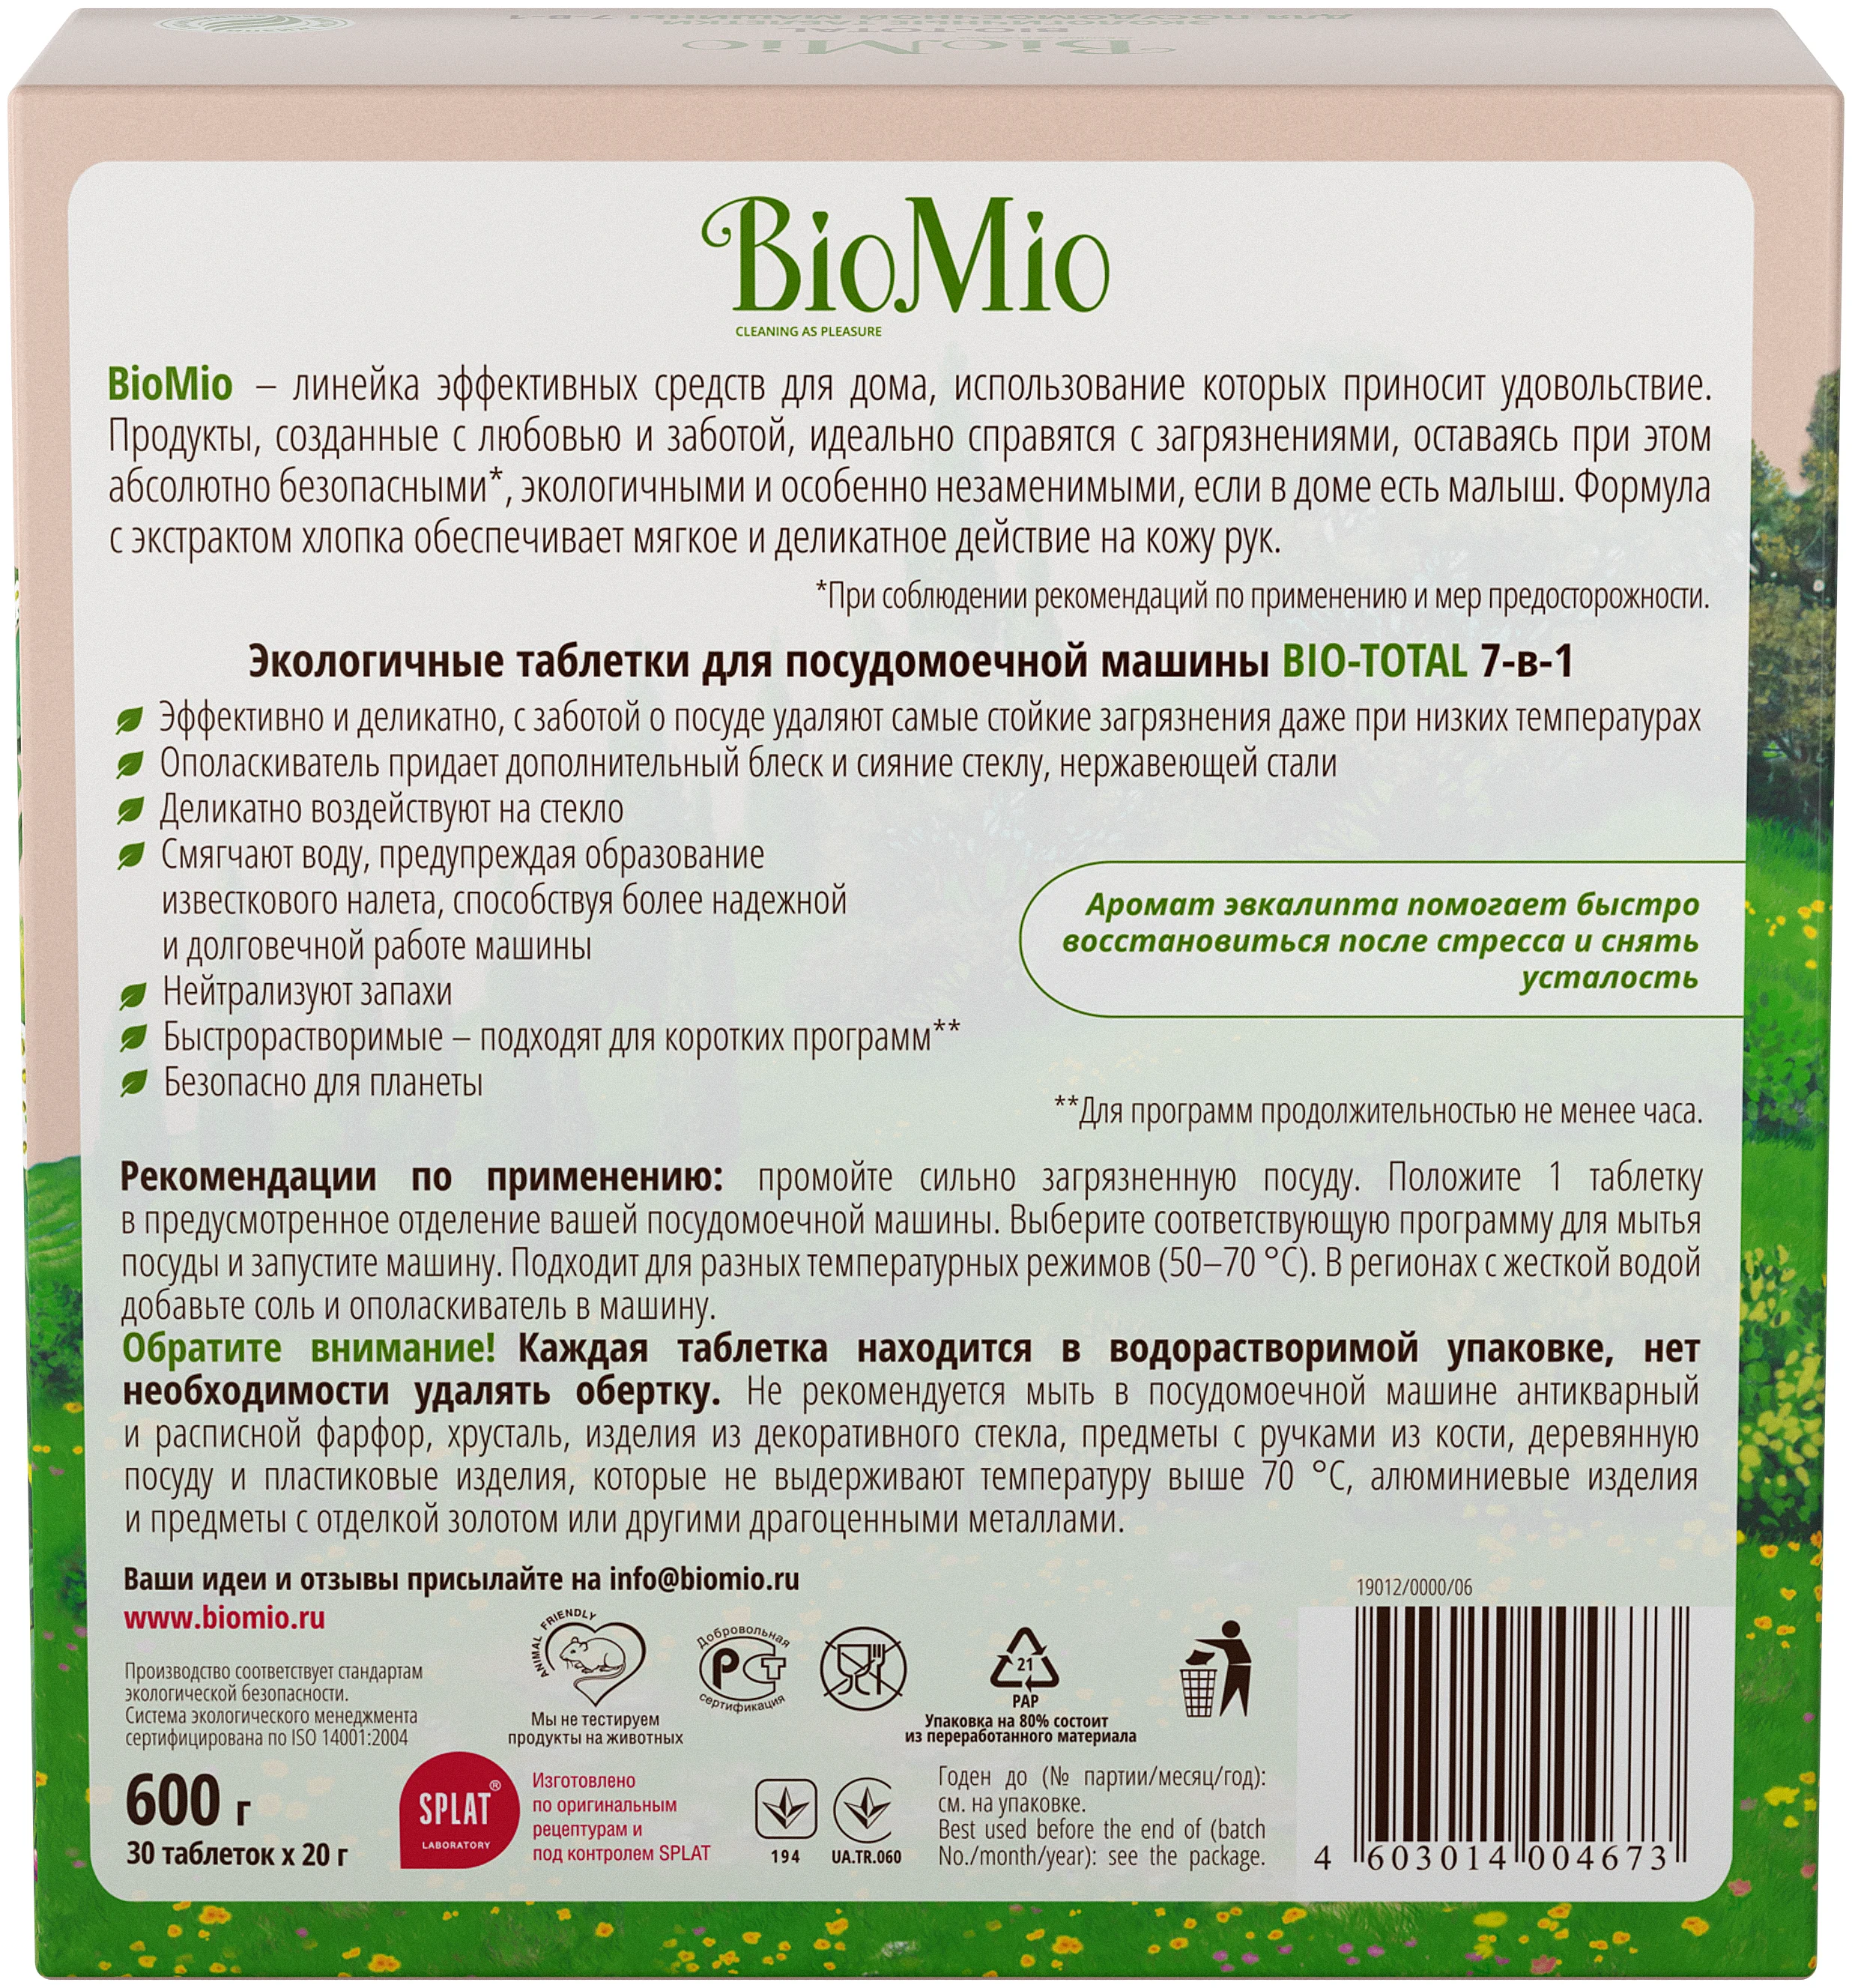 BioMio Bio-total - назначение: для устранения запаха, для мытья посуды, для придания блеска, для стекла, для мытья в холодной воде, для защиты от накипи, для нержавеющей стали